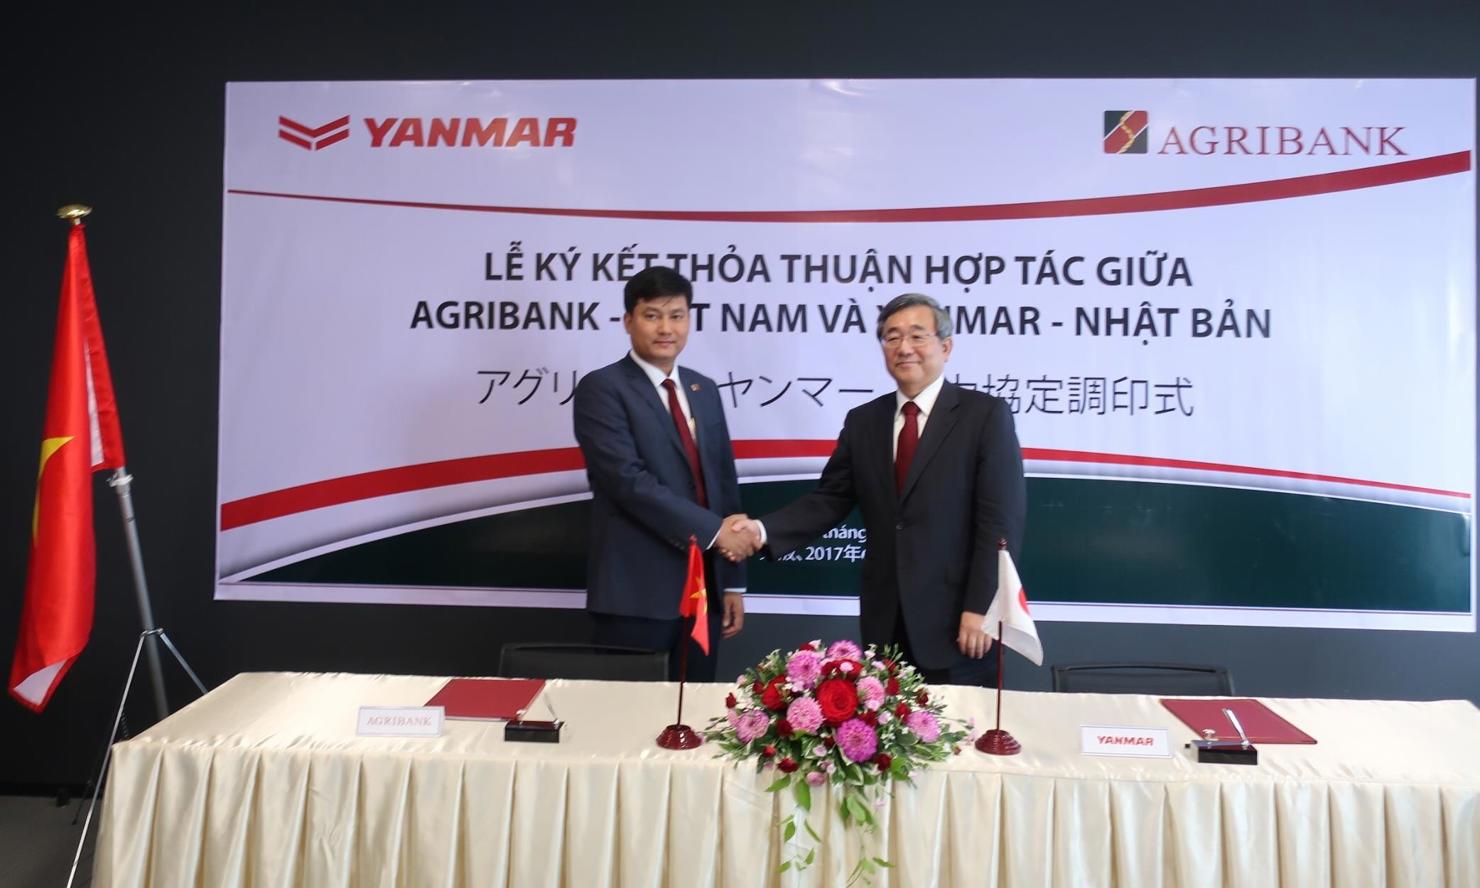 Lễ ký kết thỏa thuận giữa Agribank và Yanmar